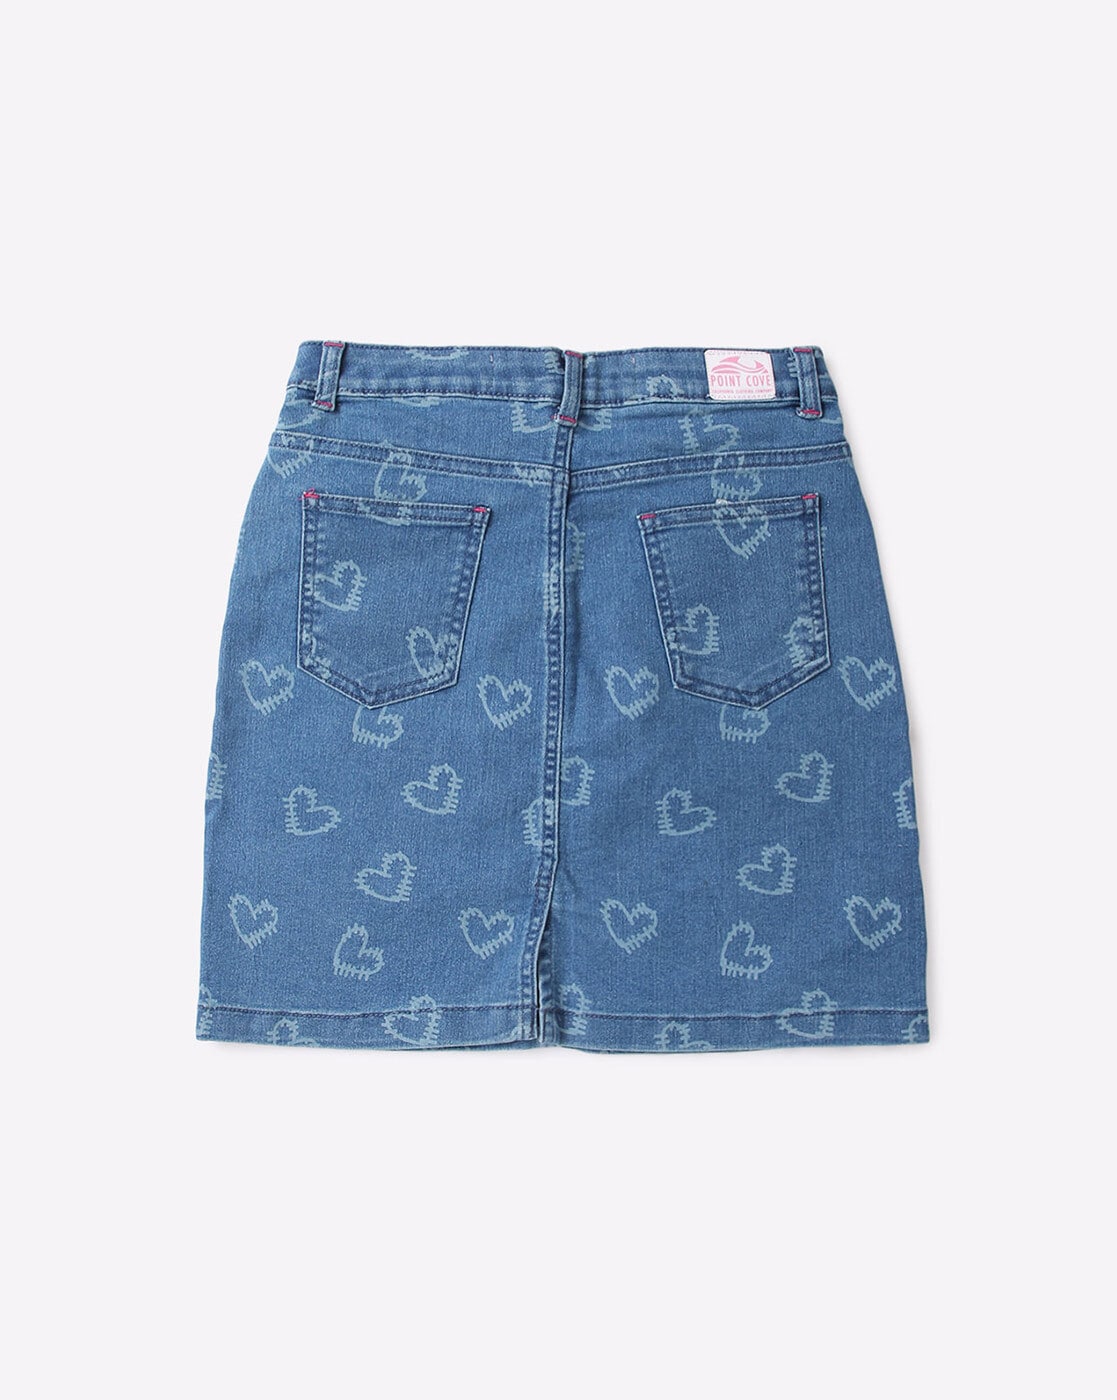 Bluemoon Pleated Micro Mini Denim Skirt | One Teaspoon